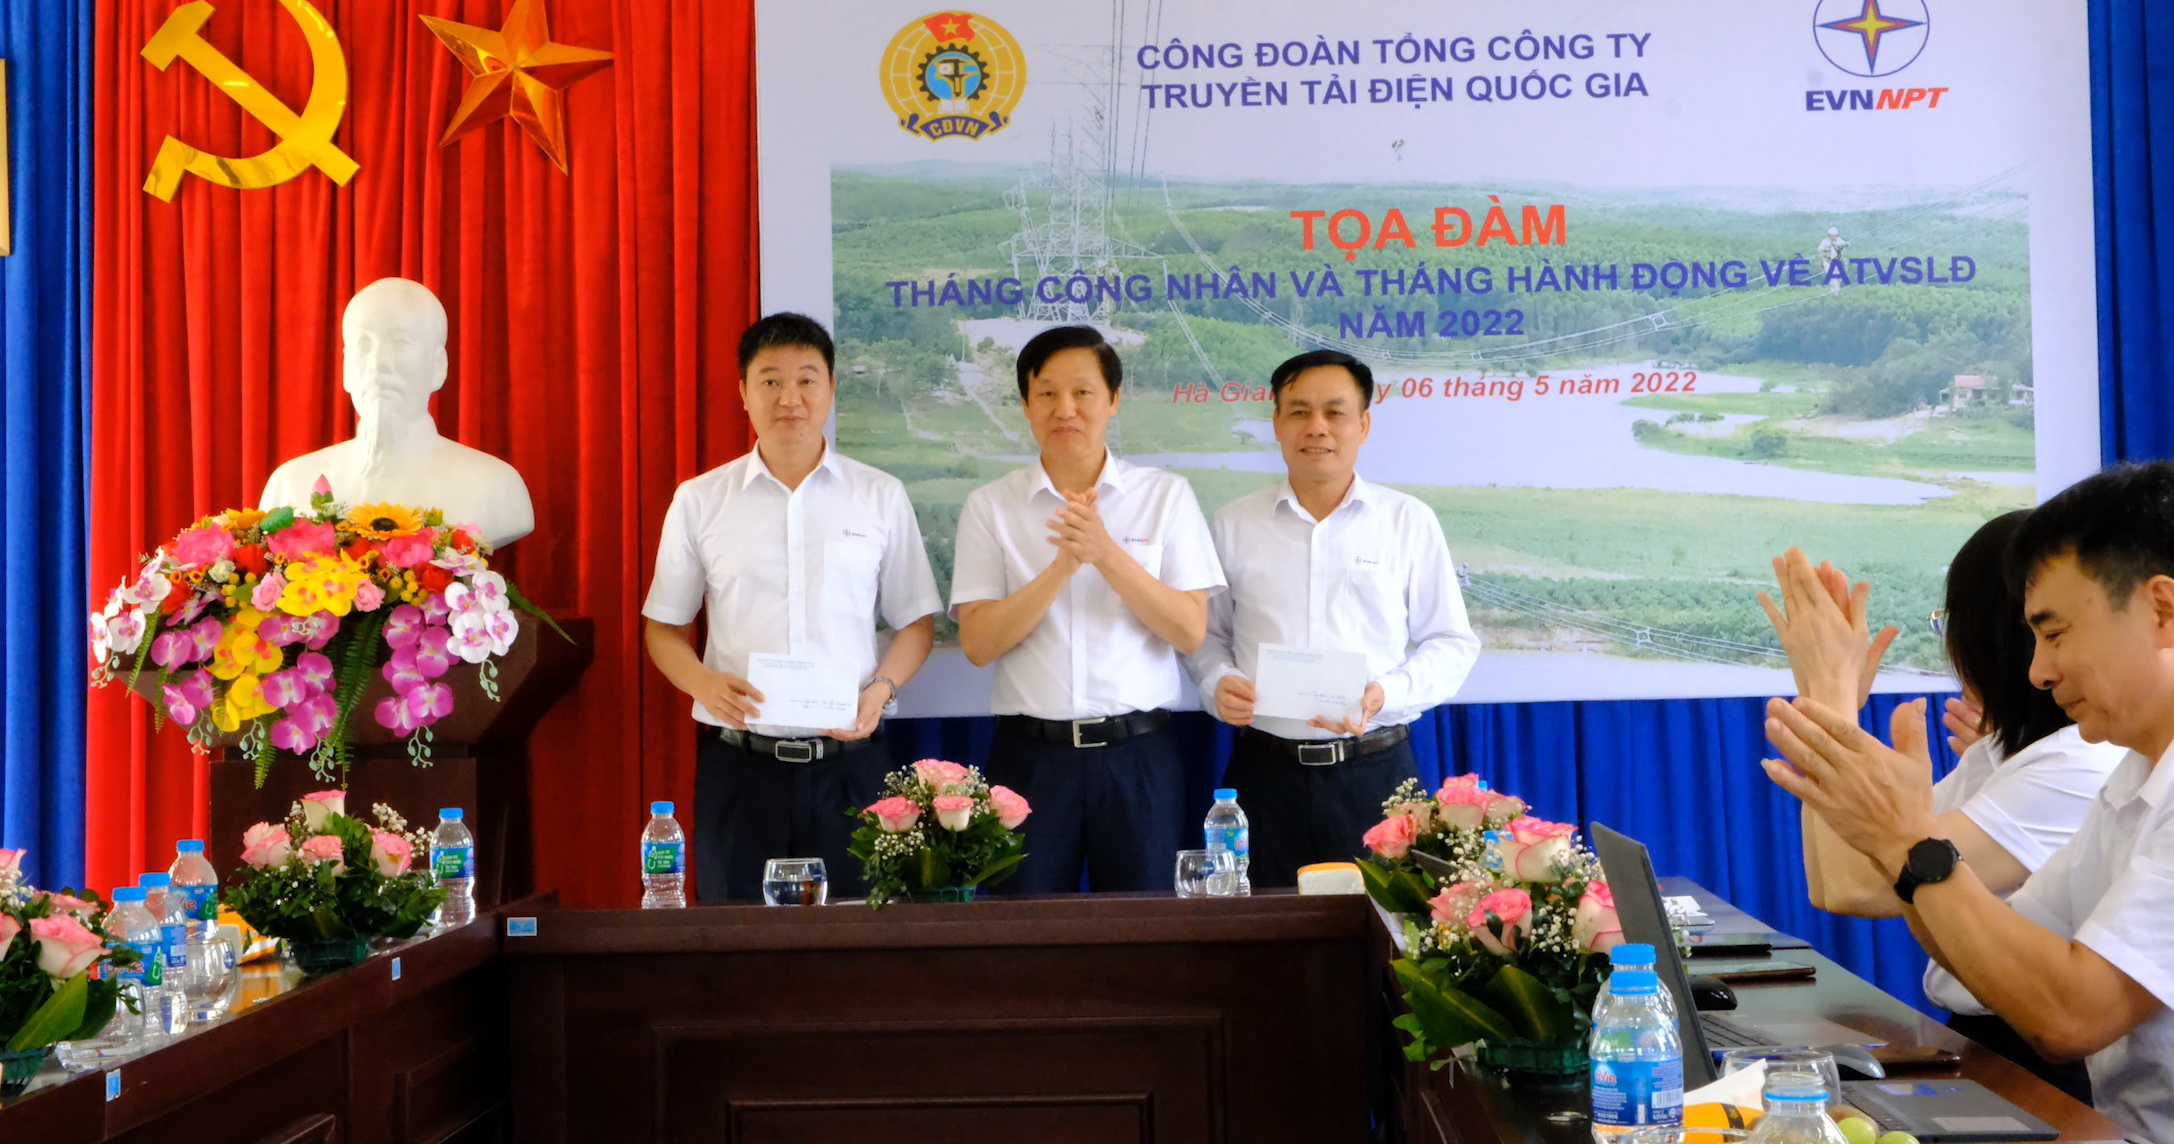 Đ/c Trịnh Tuấn Sơn – Chủ tịch Công đoàn EVNNPT trao quả cho đại diện CBCNV PTC1 và NPMB